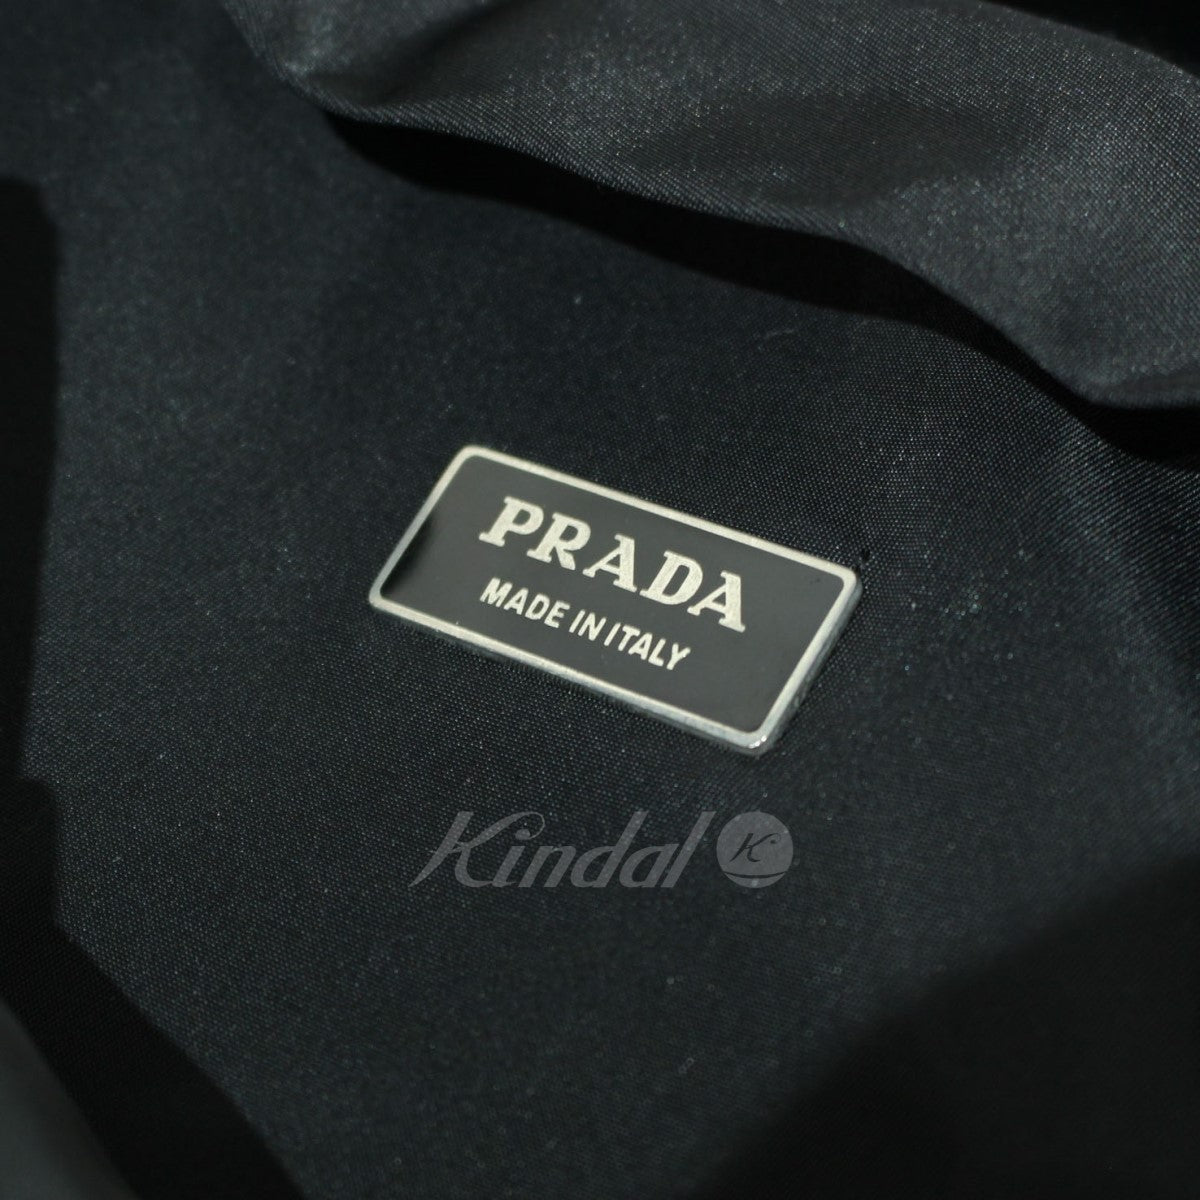 PRADA(プラダ) V135 ナイロンバックパック リュック バッグ